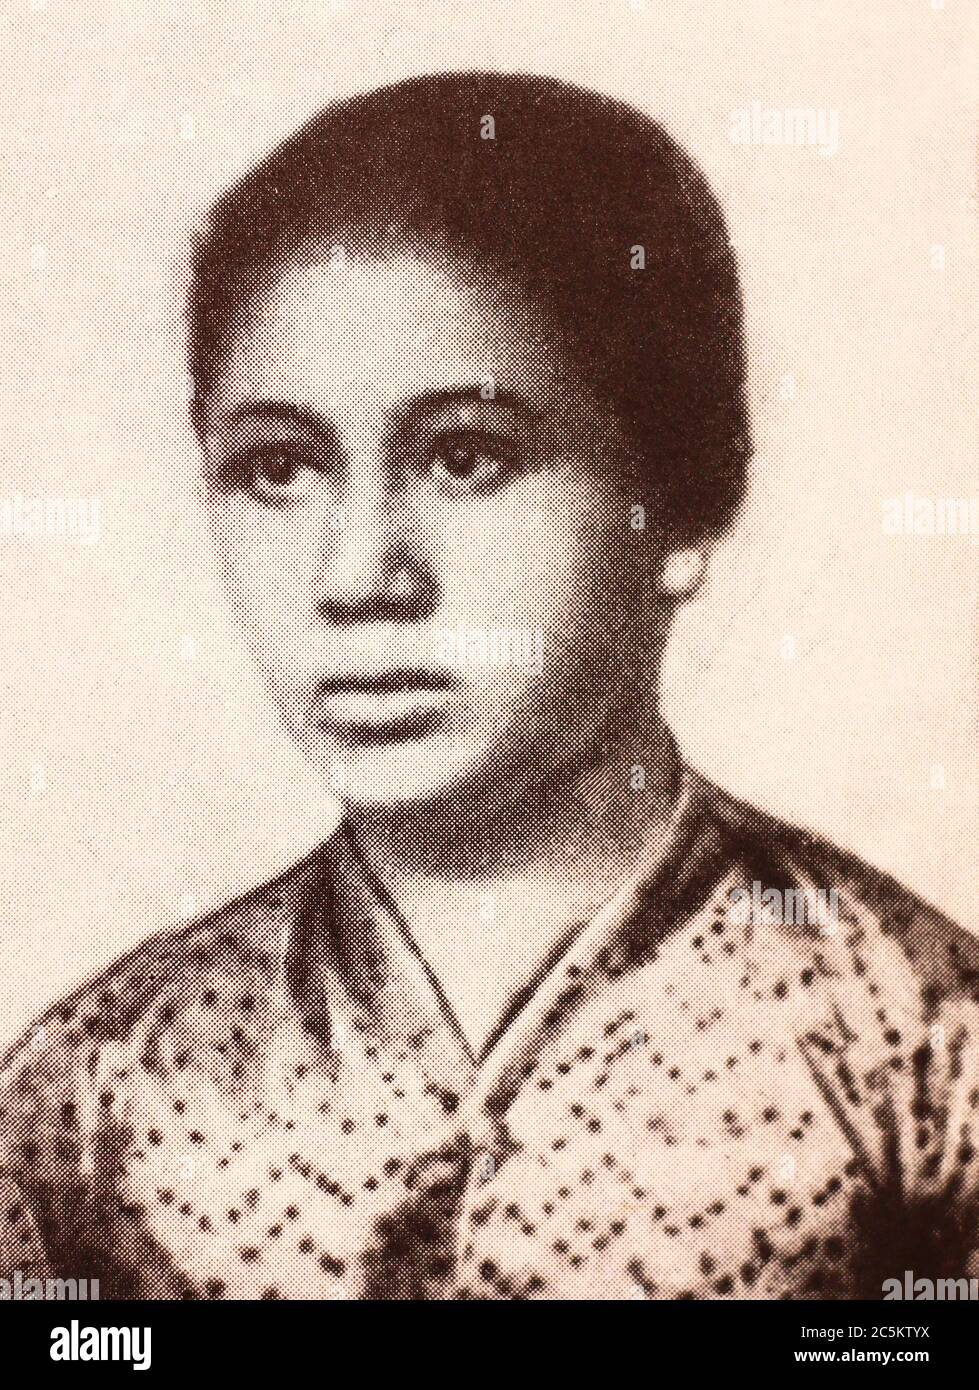 Raden Ajeng Kartini. Photo du début du XXe siècle. Raden Adjeng Kartini (21 avril 1879 – 17 septembre 1904), parfois connu sous le nom de Raden Ayu Kartini, était un héros national indonésien de Java. Elle a été pionnière dans le domaine de l'éducation des filles et des droits des femmes pour les Indonésiens. Banque D'Images